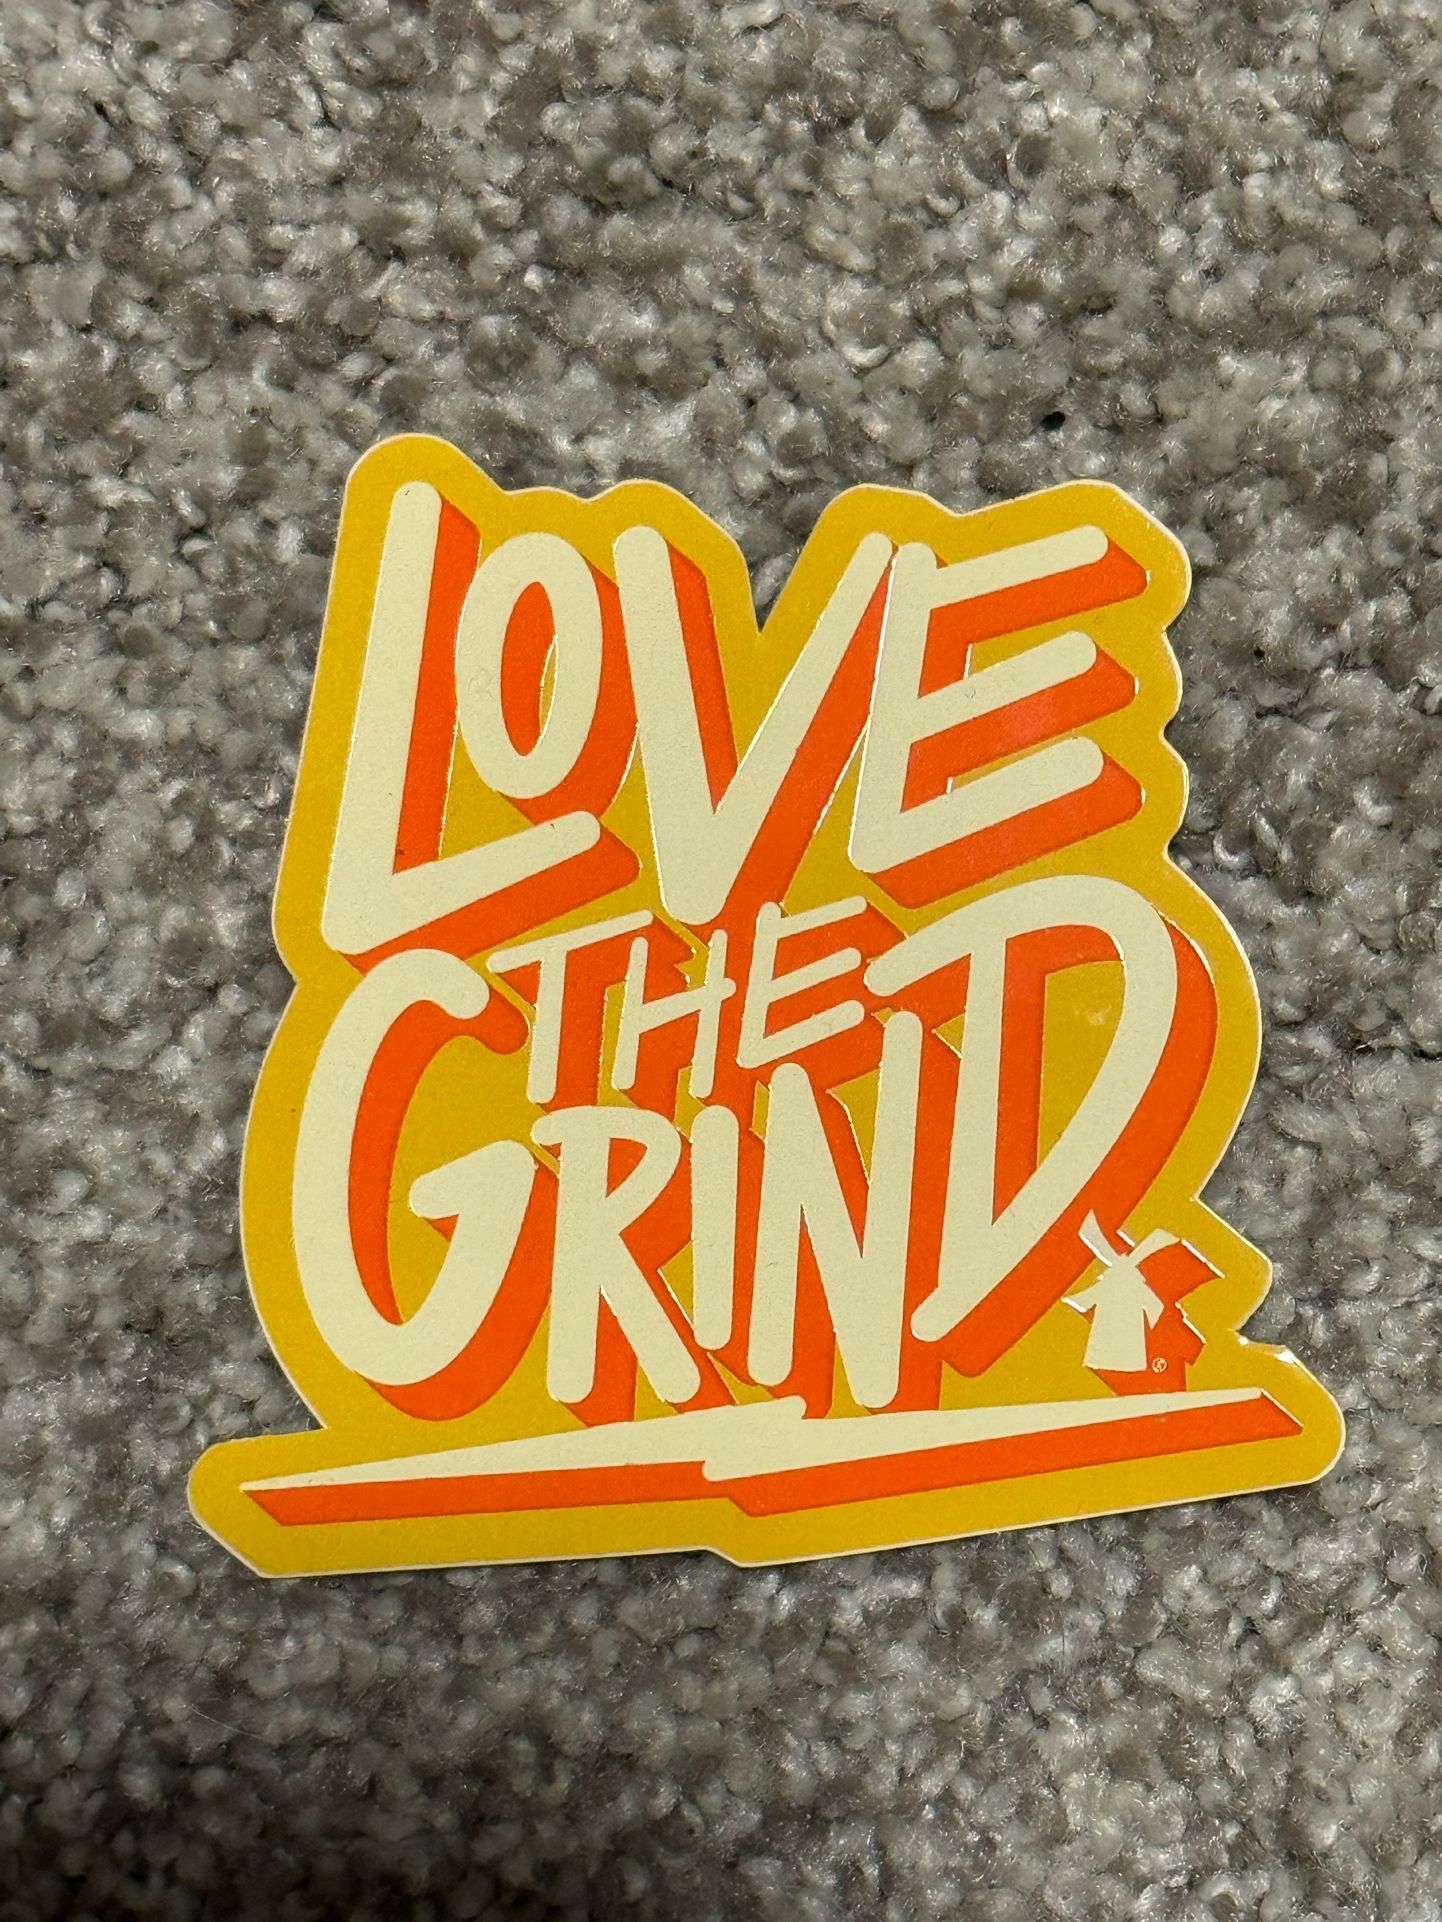 Dutch Bros “Love The Grind” Sticker